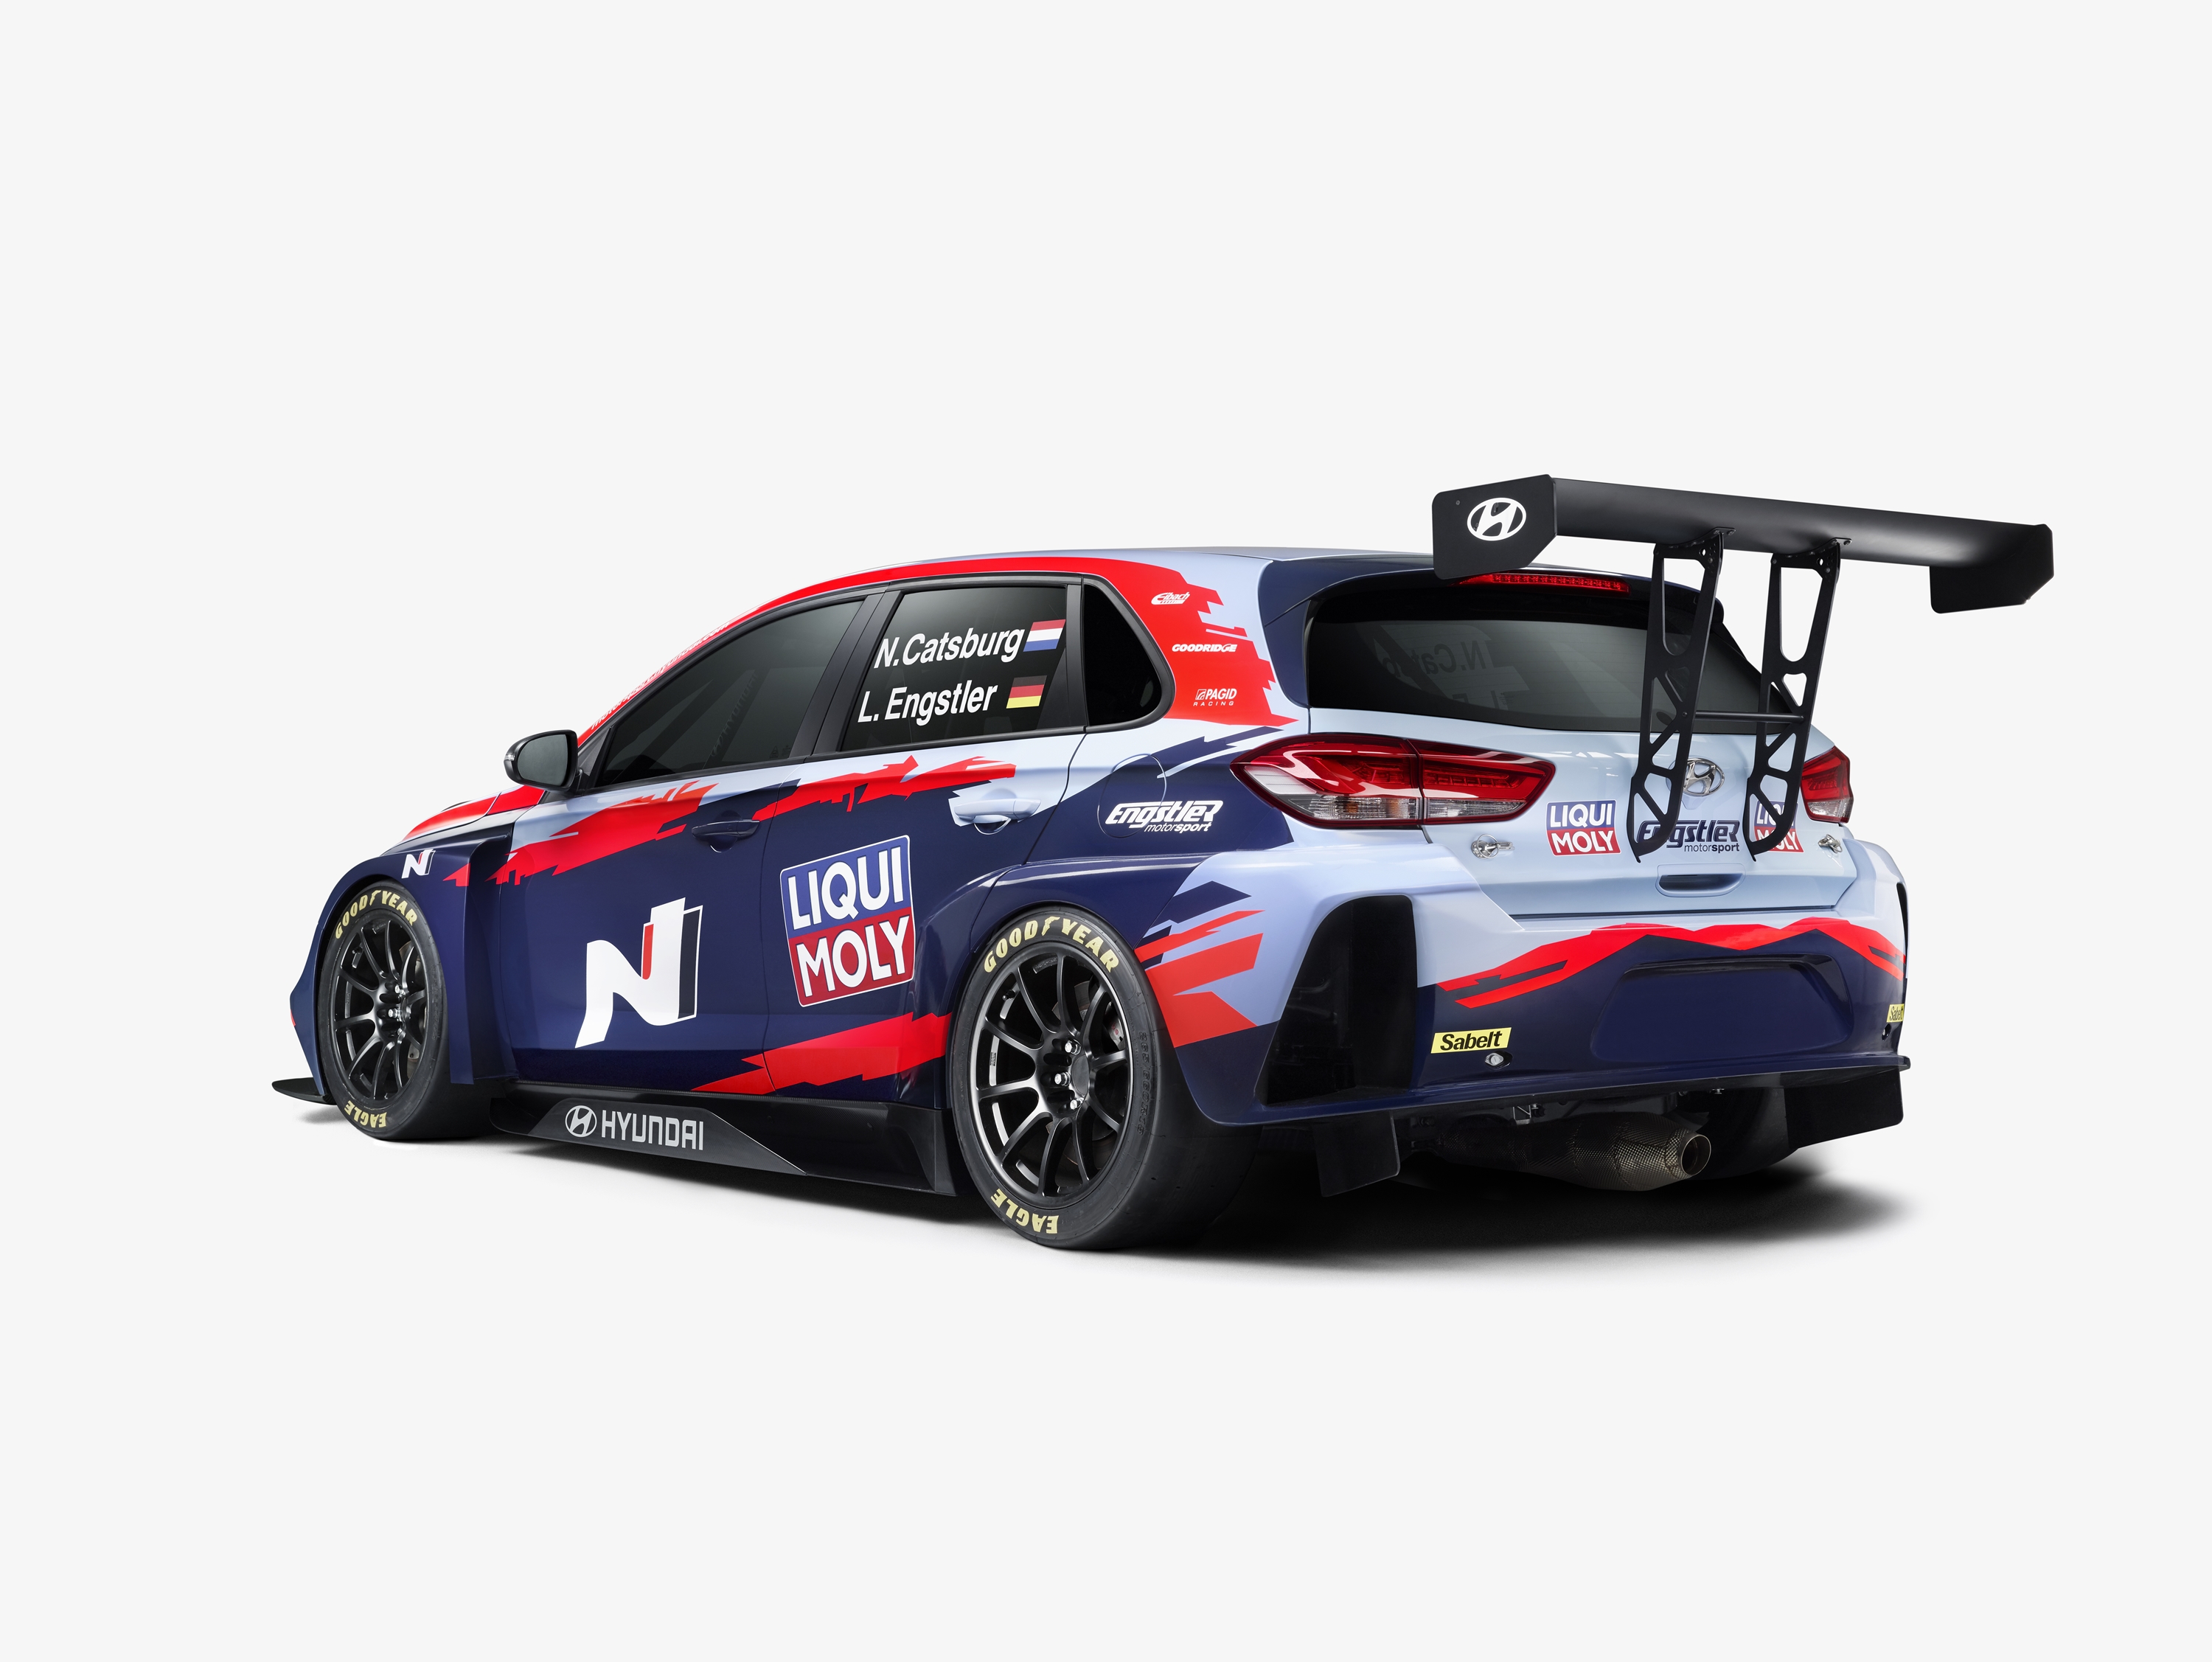 Nick Catsburg és Luca Engstler, vagyis az Engstler Hyundai N Liqui Moly Racing Team autóinak idei festése.<br /><br />Fotó: Hyundai Motorsport Press<br /><br />